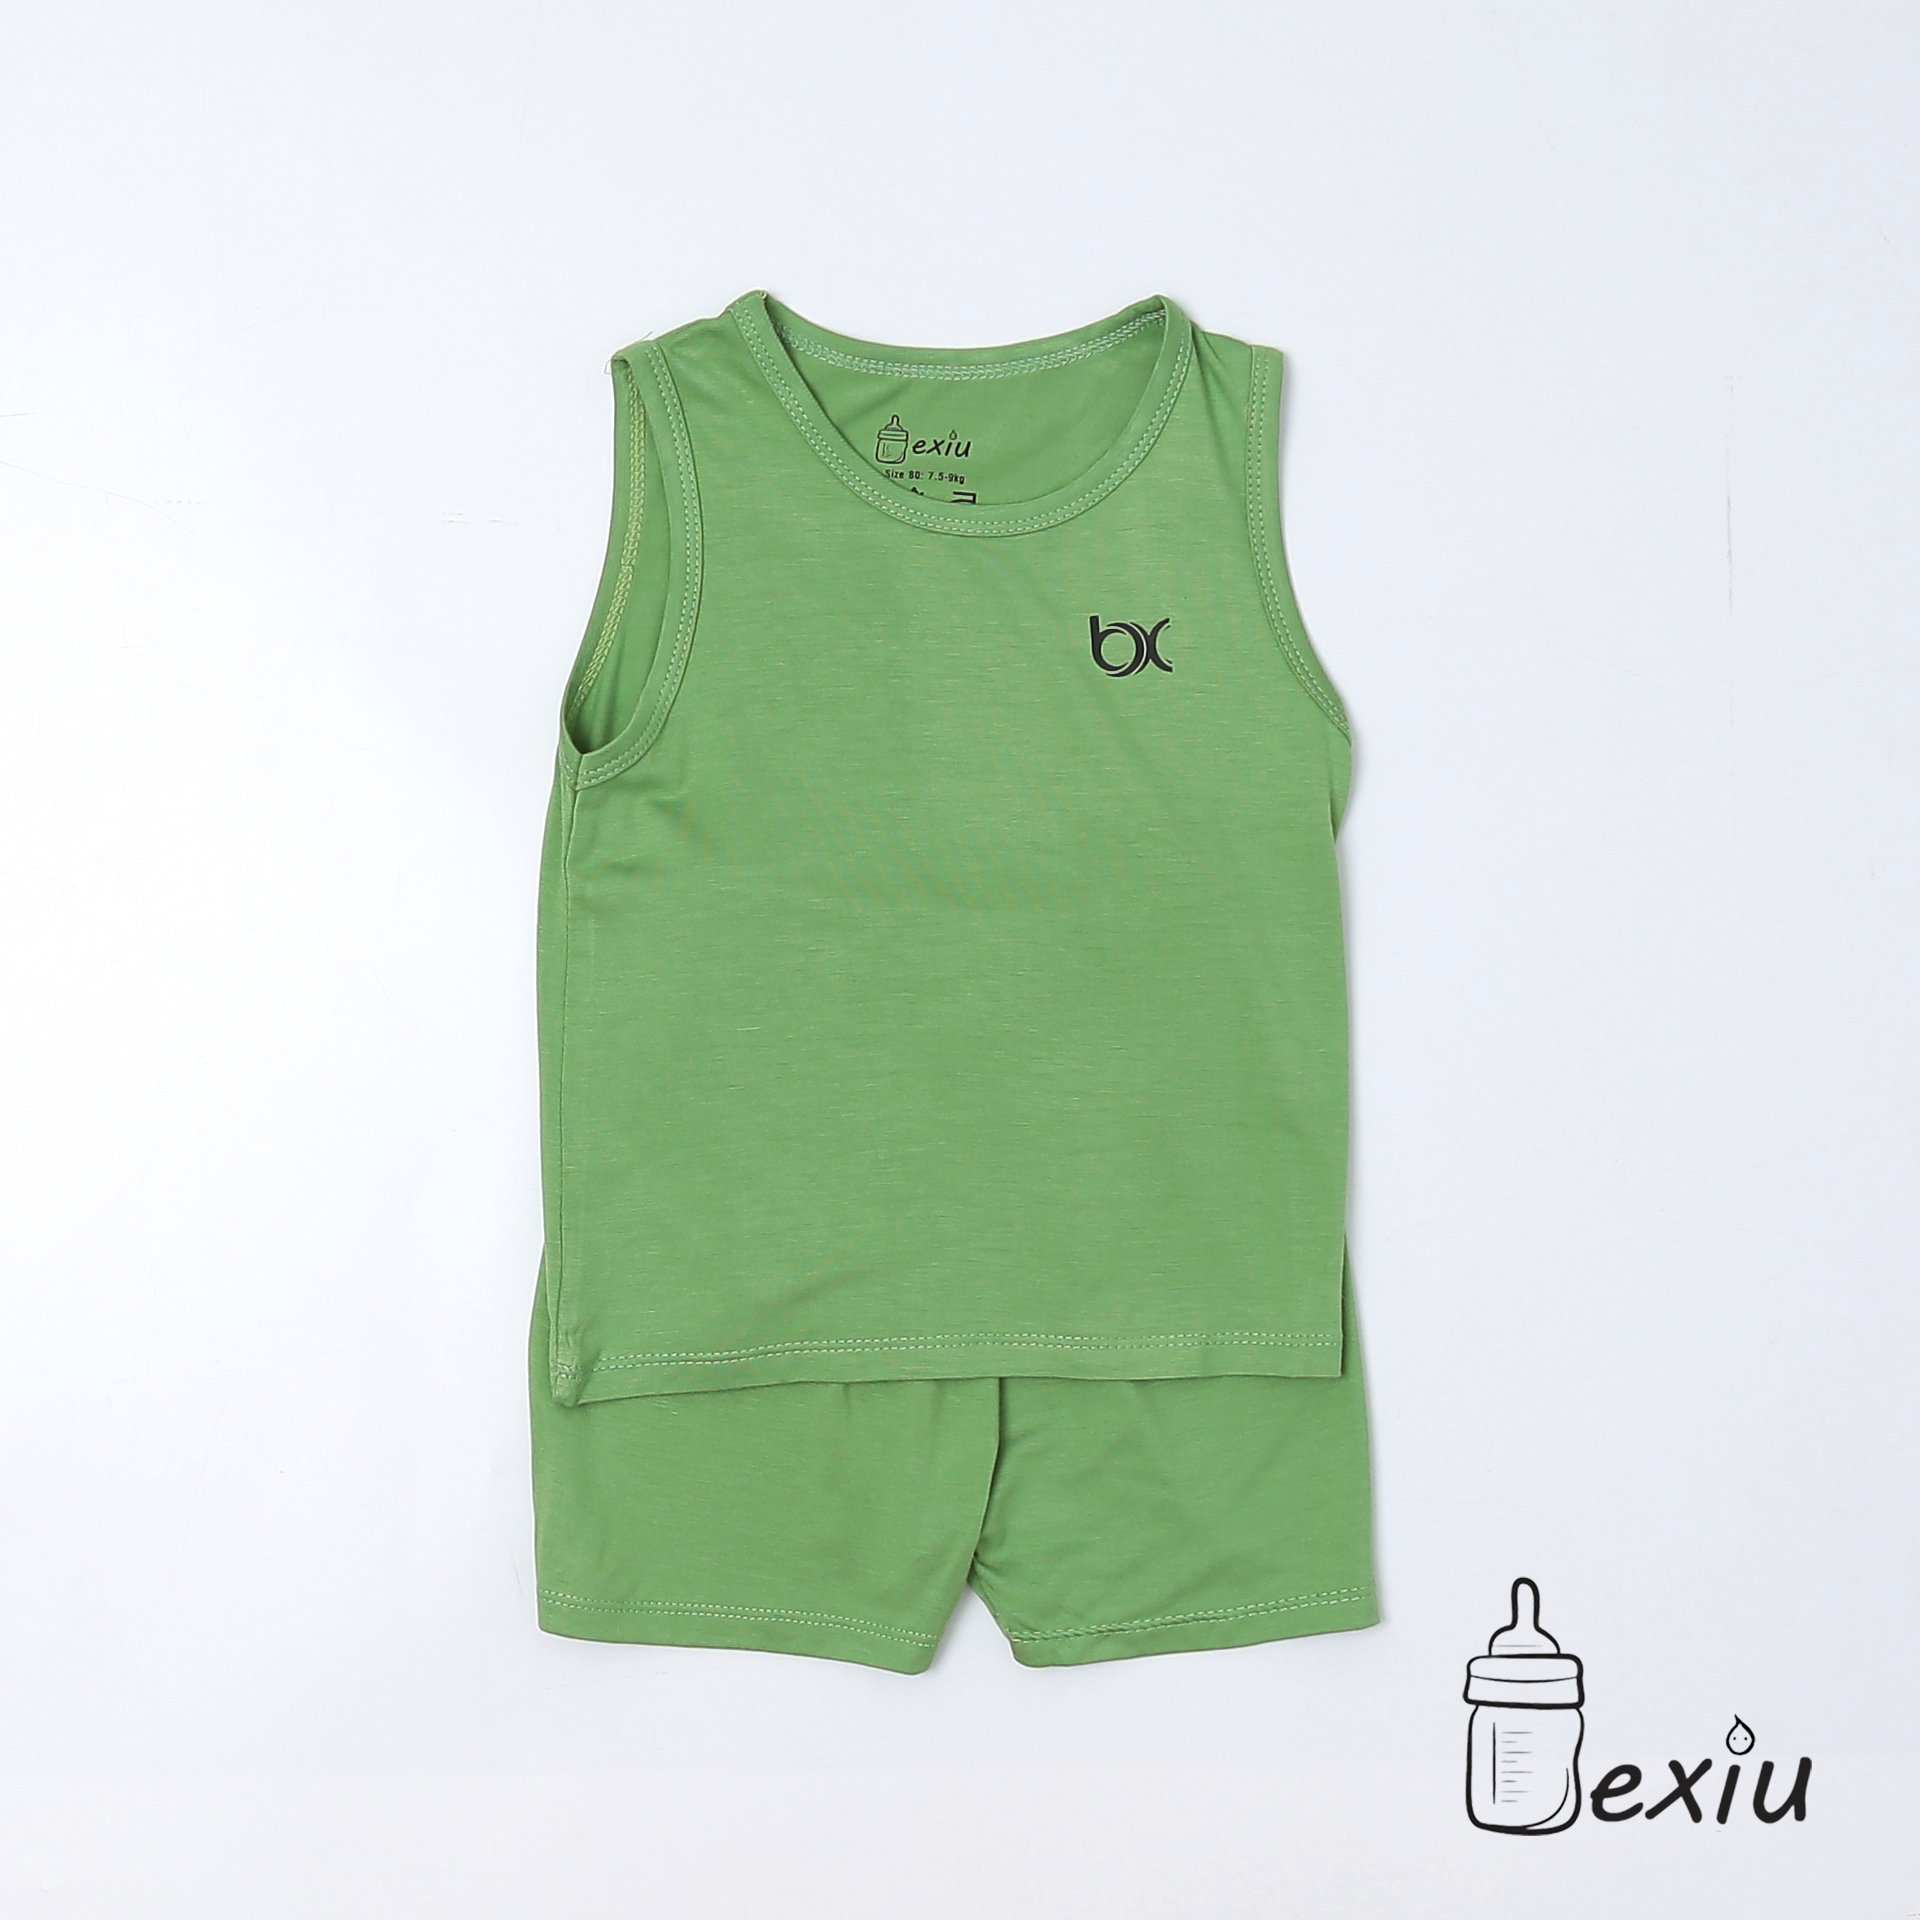 Hcmbộ ba lỗ màu bexiu bx - quần áo trẻ sơ sinh vải cotton lạnh mát mềm - ảnh sản phẩm 8